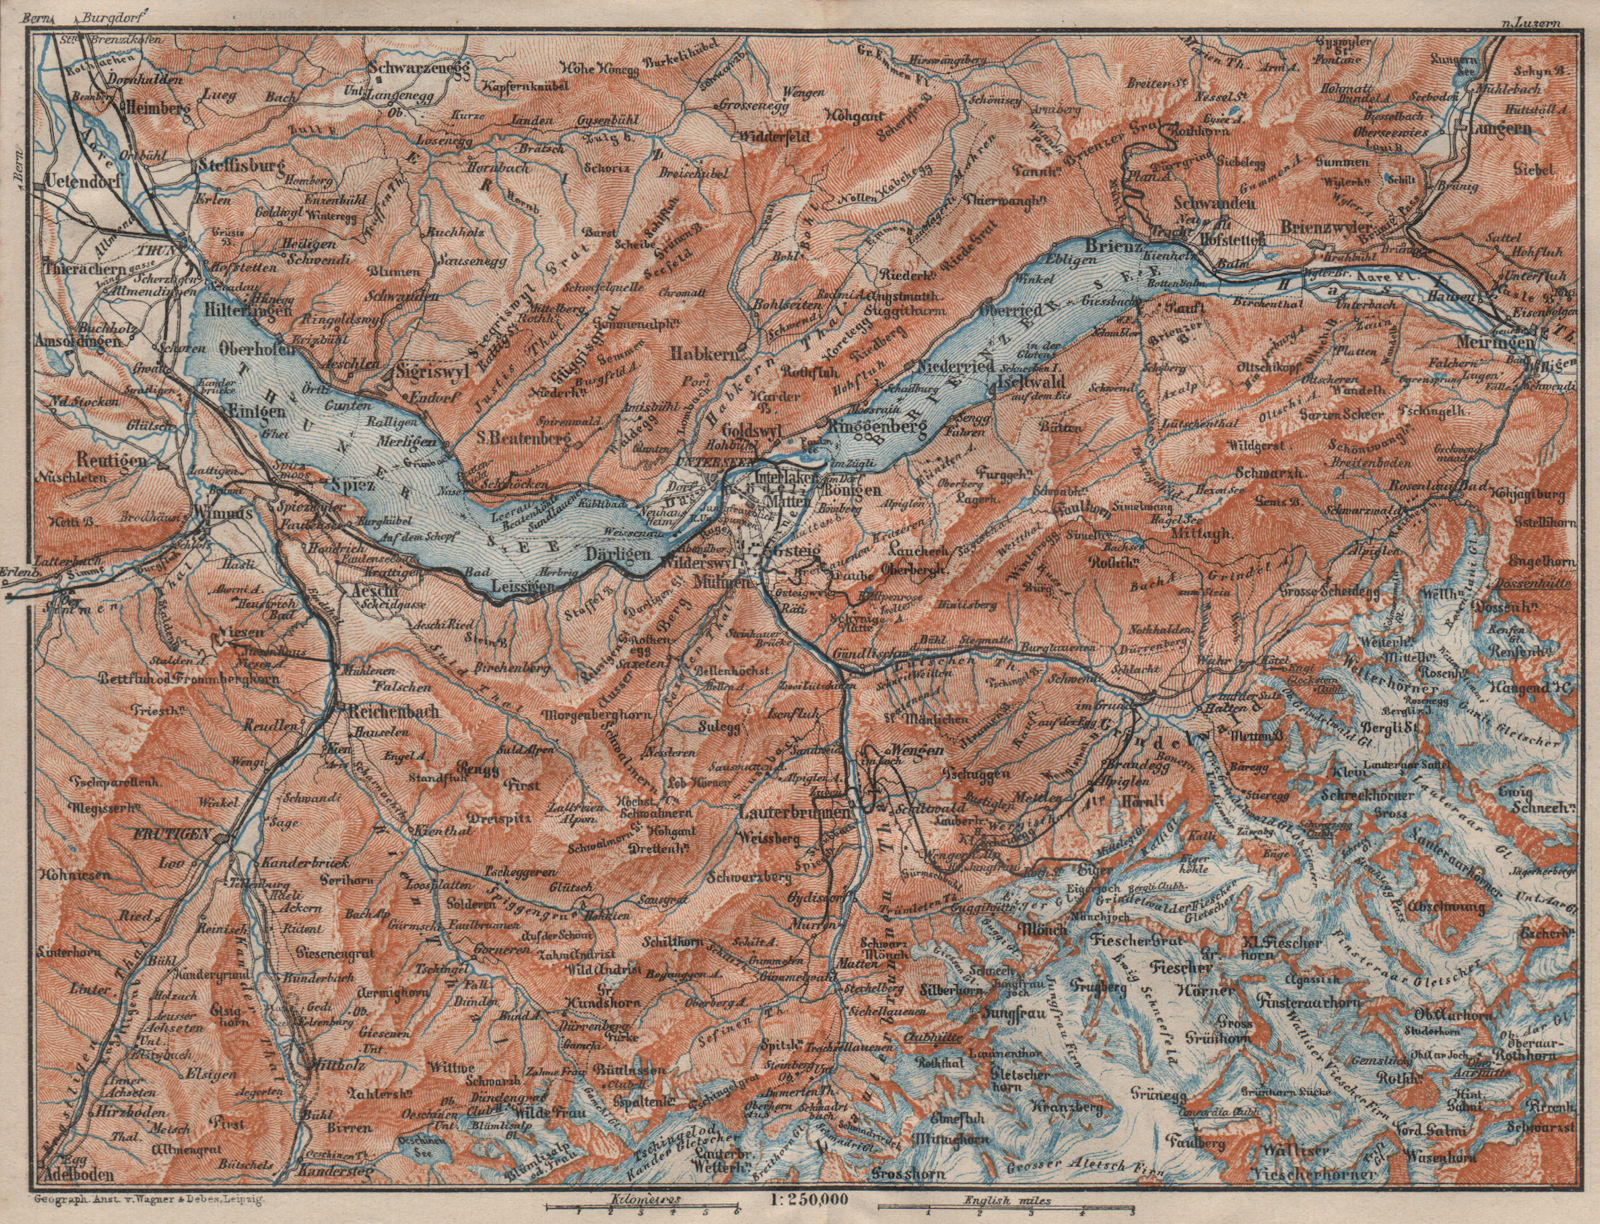 BERNESE OBERLAND. Wengen Mürren Grundelwald Reutigen Interlaken Eiger 1911 map